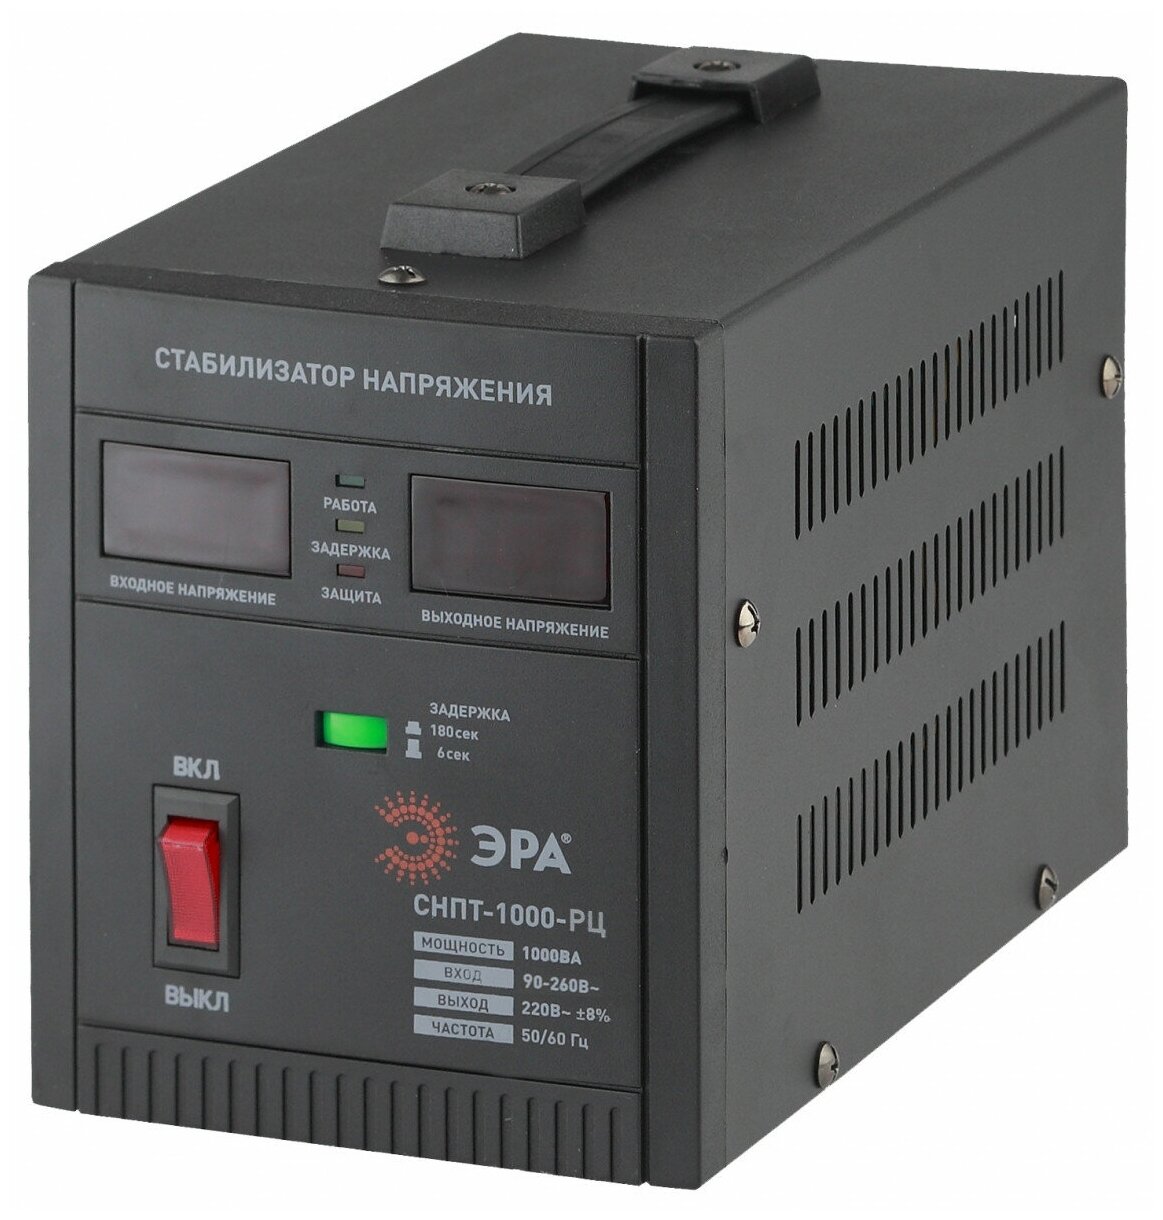 ЭРА СНПТ-1000-РЦ ЭРА Стабилизатор напряжения переносной, ц. д, 90-260В/220В, 1000ВА (4/96)